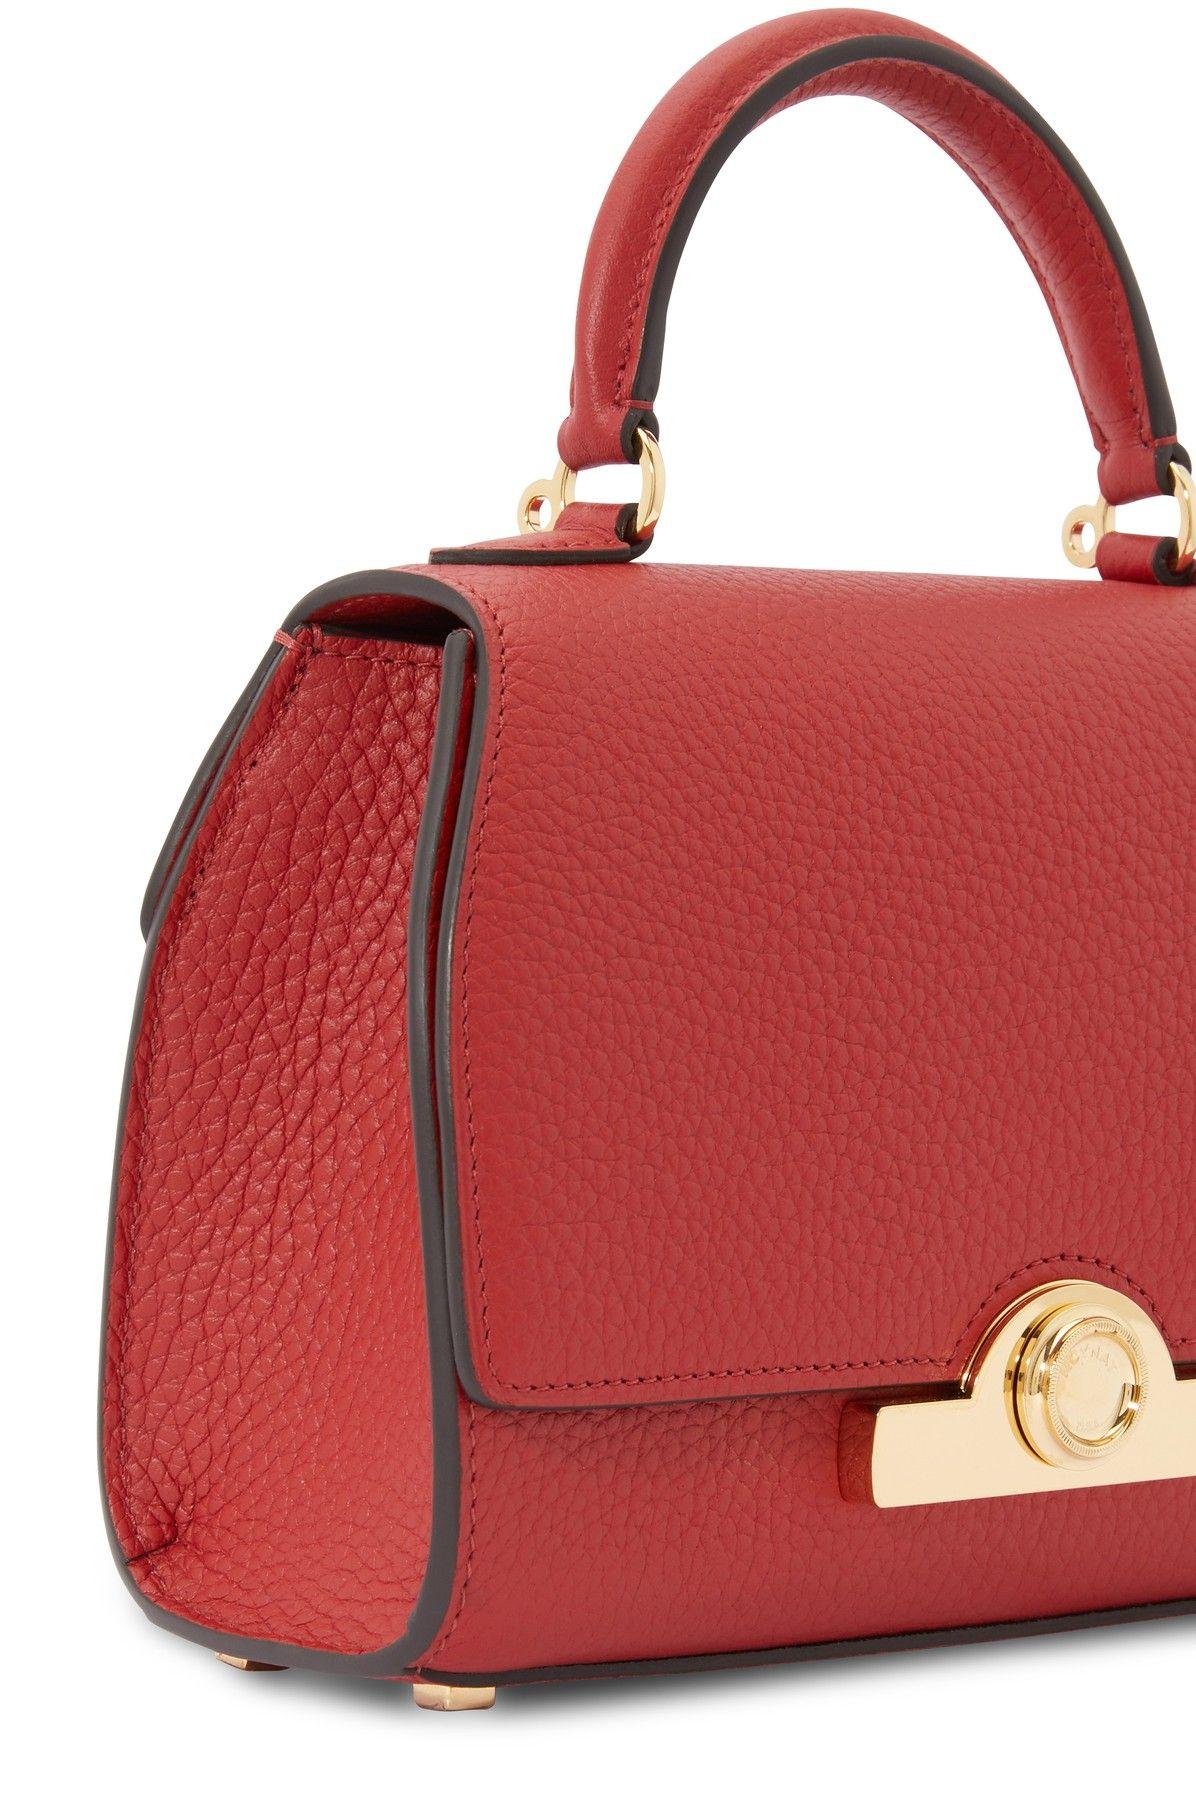 Moynat Rejane BB Shoulder Handbag Red Calfskin Leather